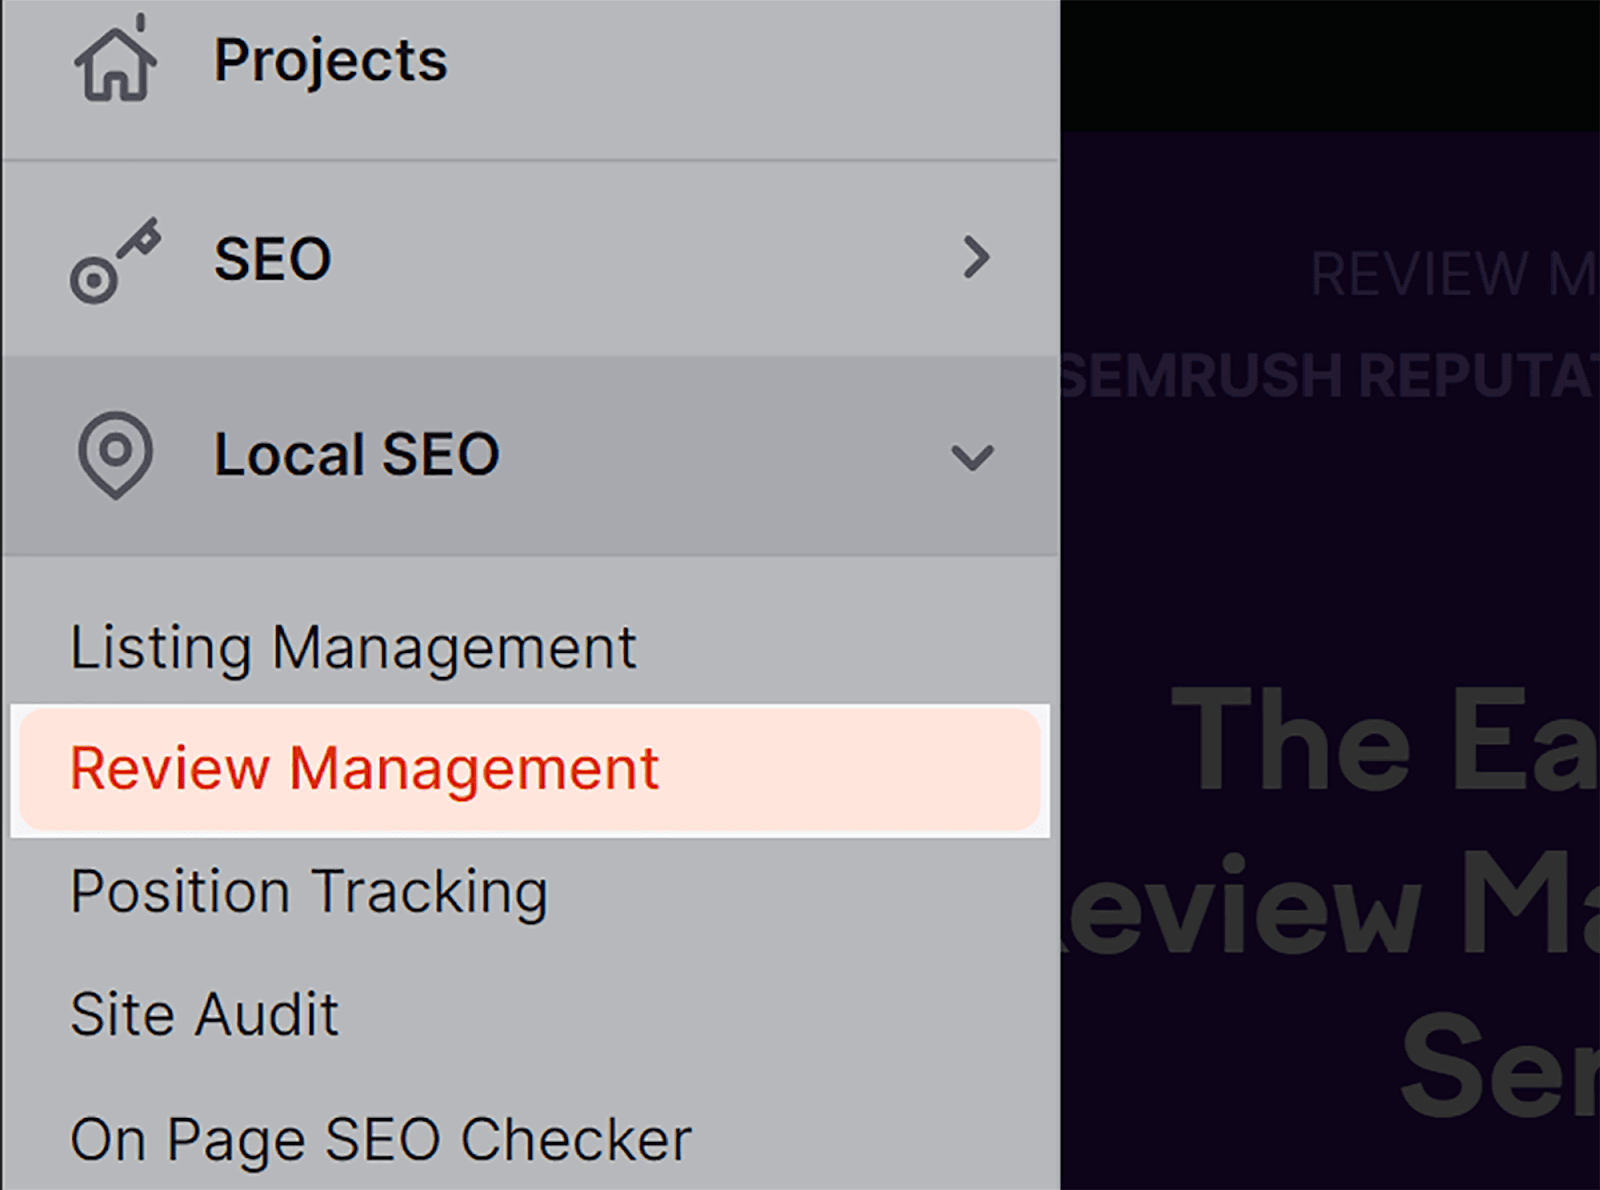 SEMrush Review Management tool